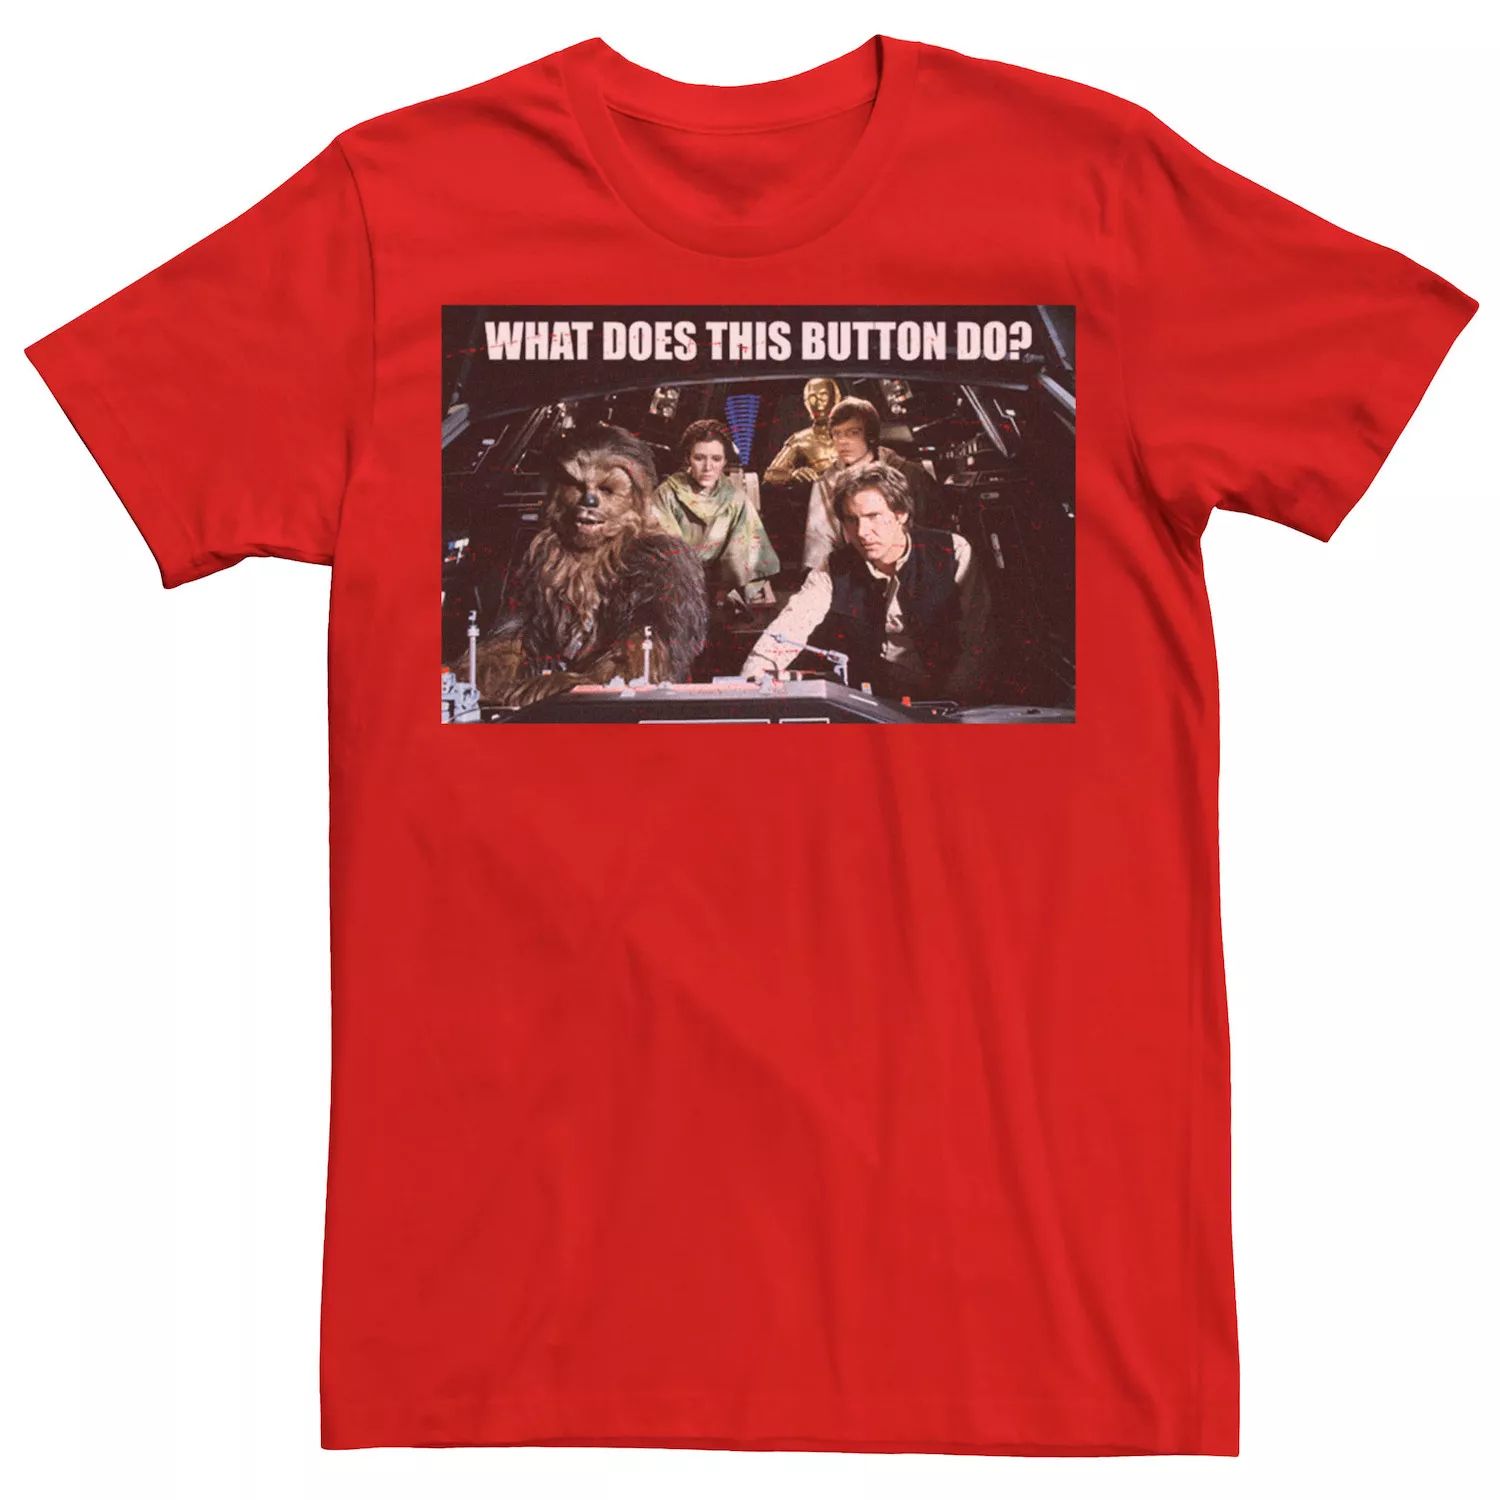 Мужская футболка «Звездные войны: что делает эту пуговицу», Красная Star Wars, красный